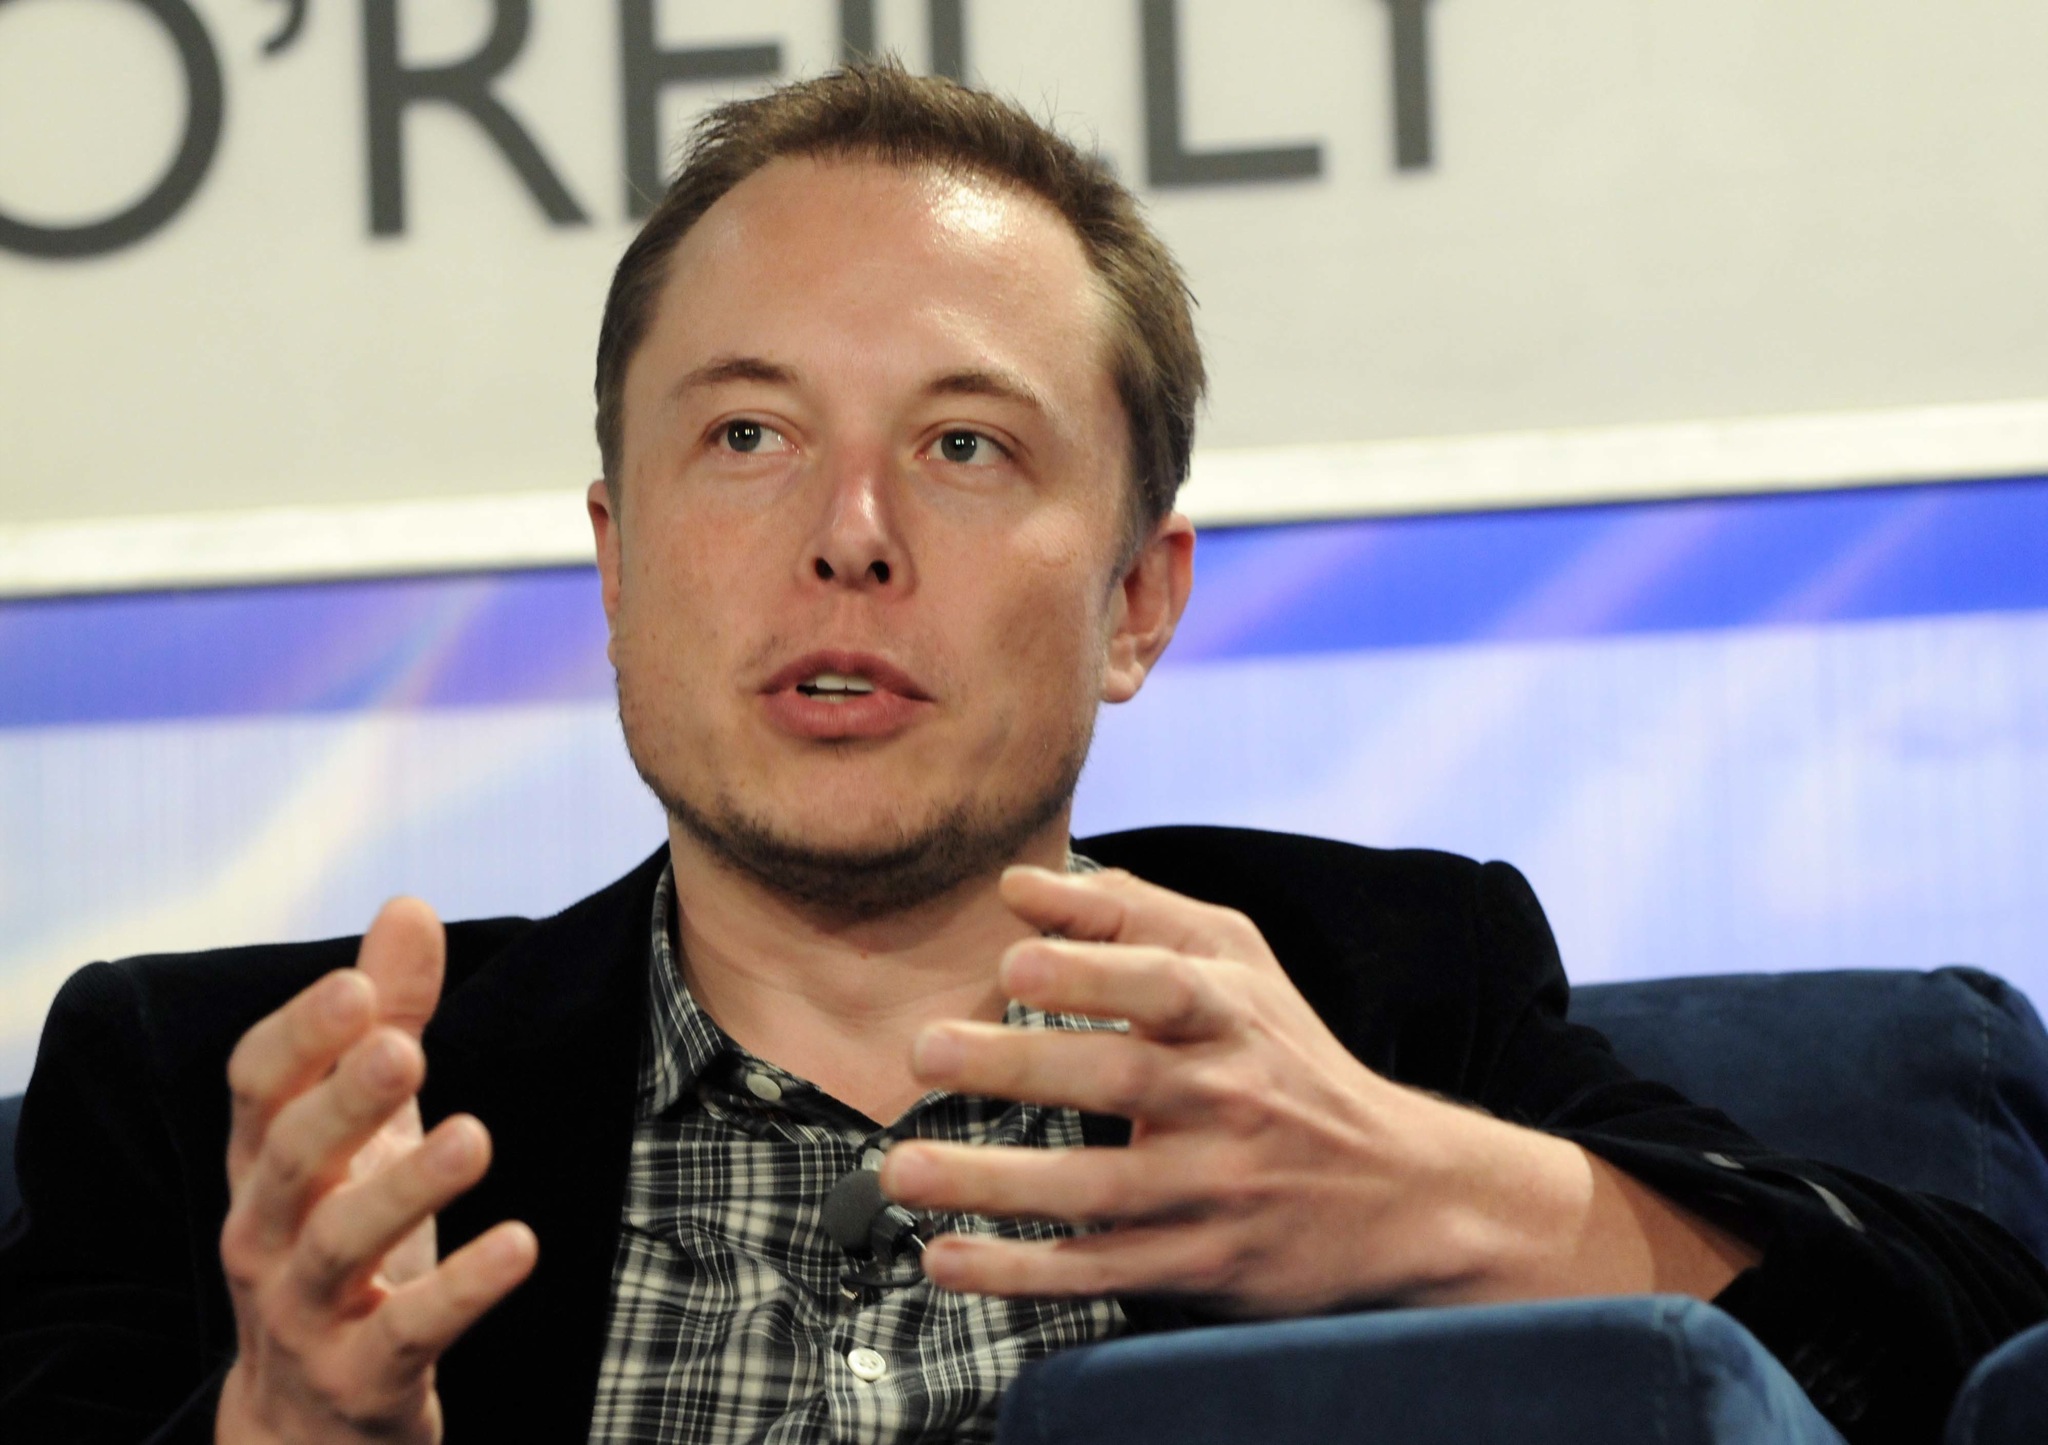 Elon Musk toma atitude após ser acusado de mostrar órgão íntimo para funcionária